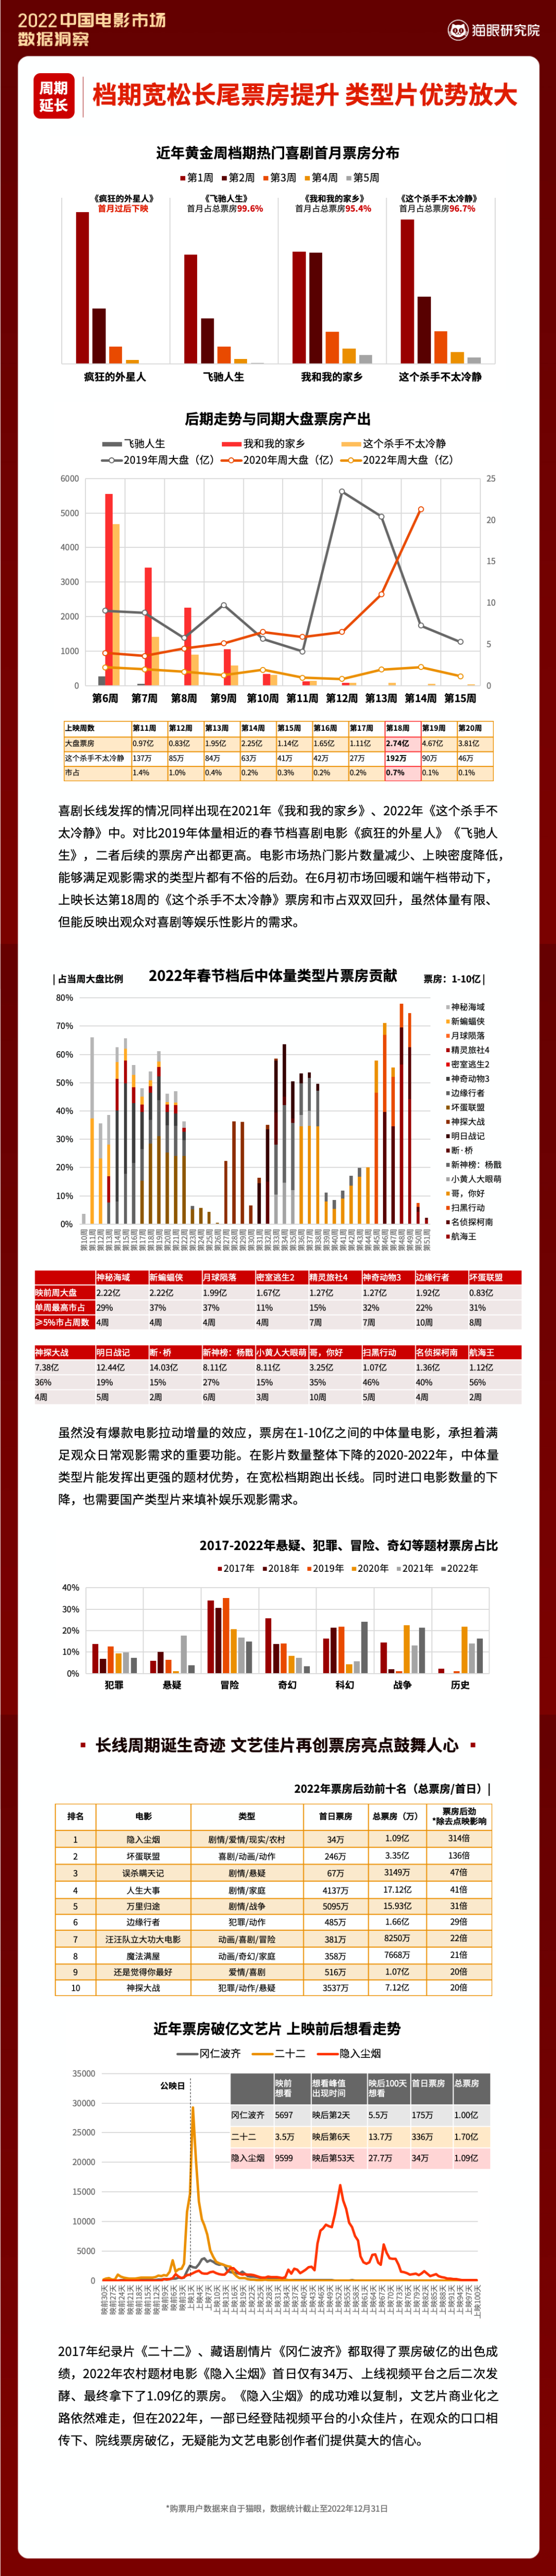 2022中国电影市场数据洞察